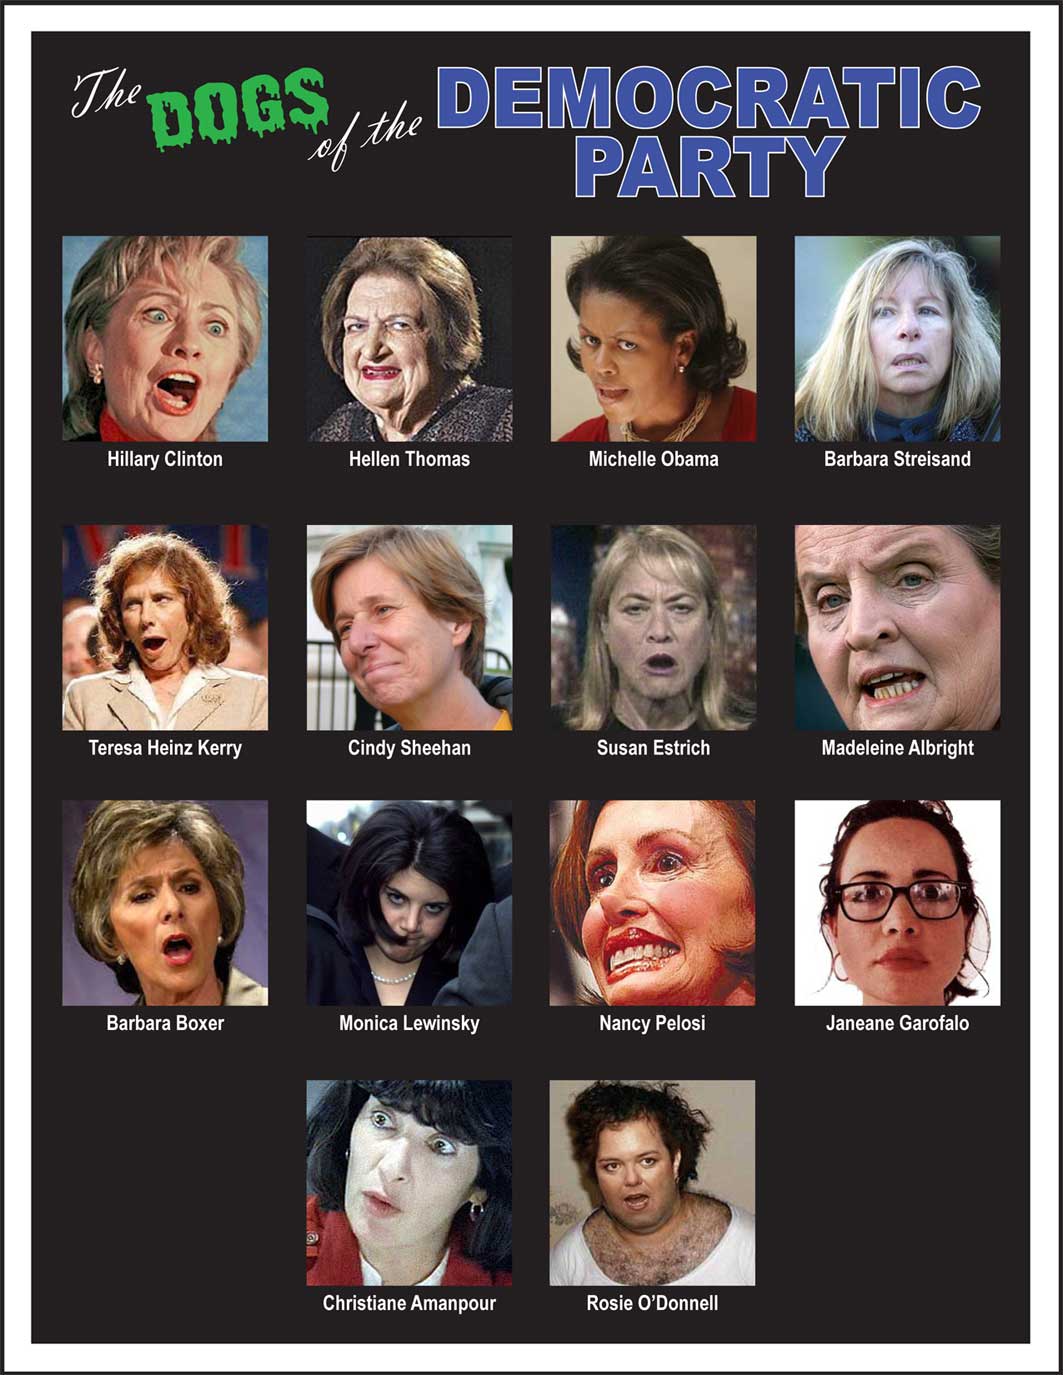 The Ladies of Politics